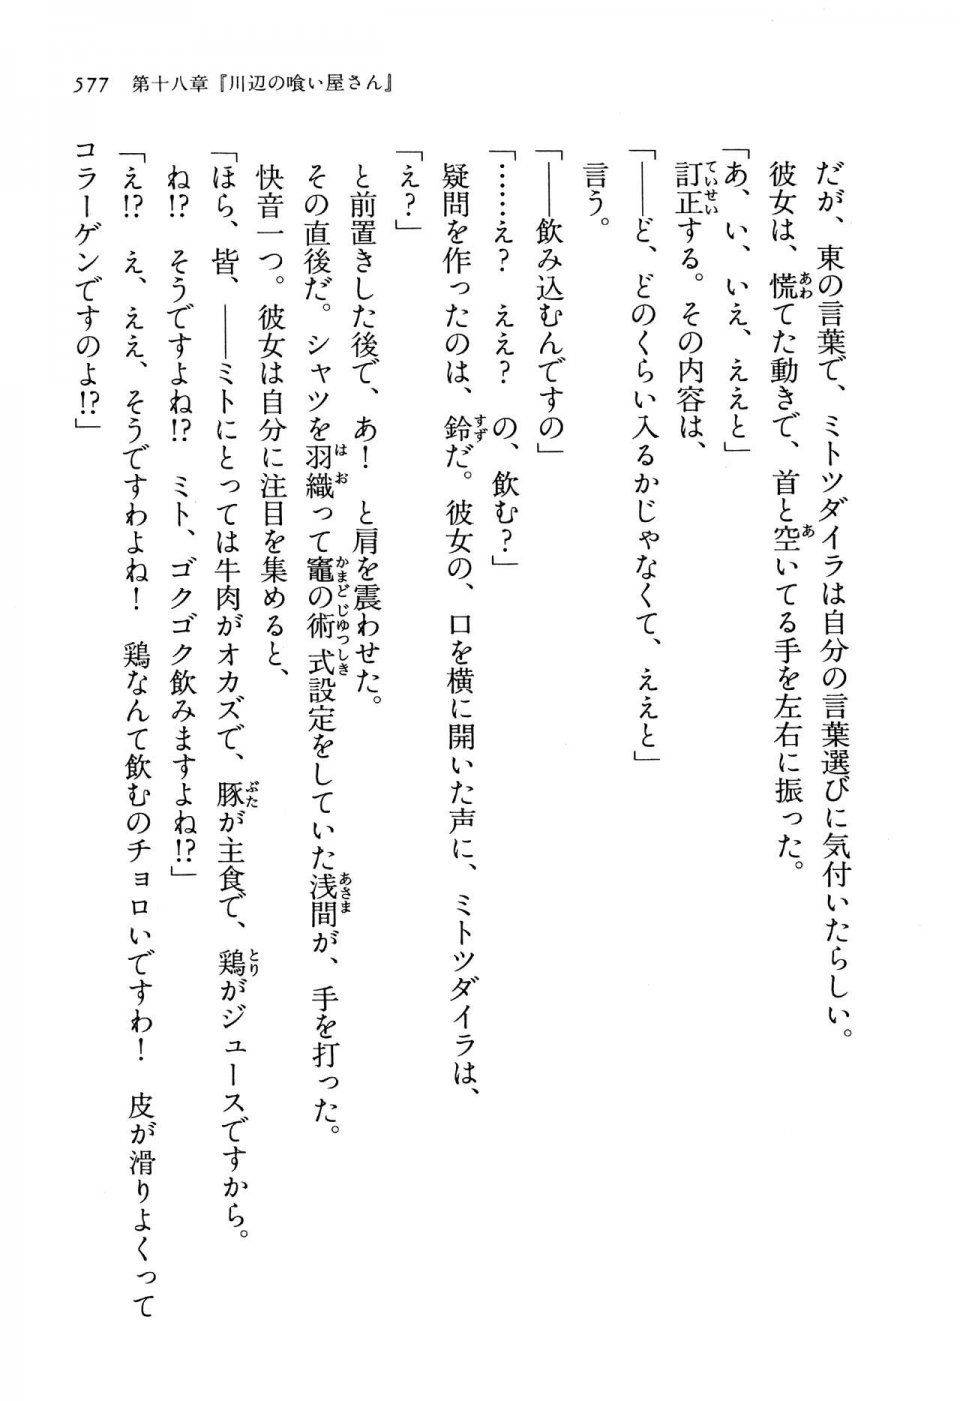 Kyoukai Senjou no Horizon LN Vol 13(6A) - Photo #577